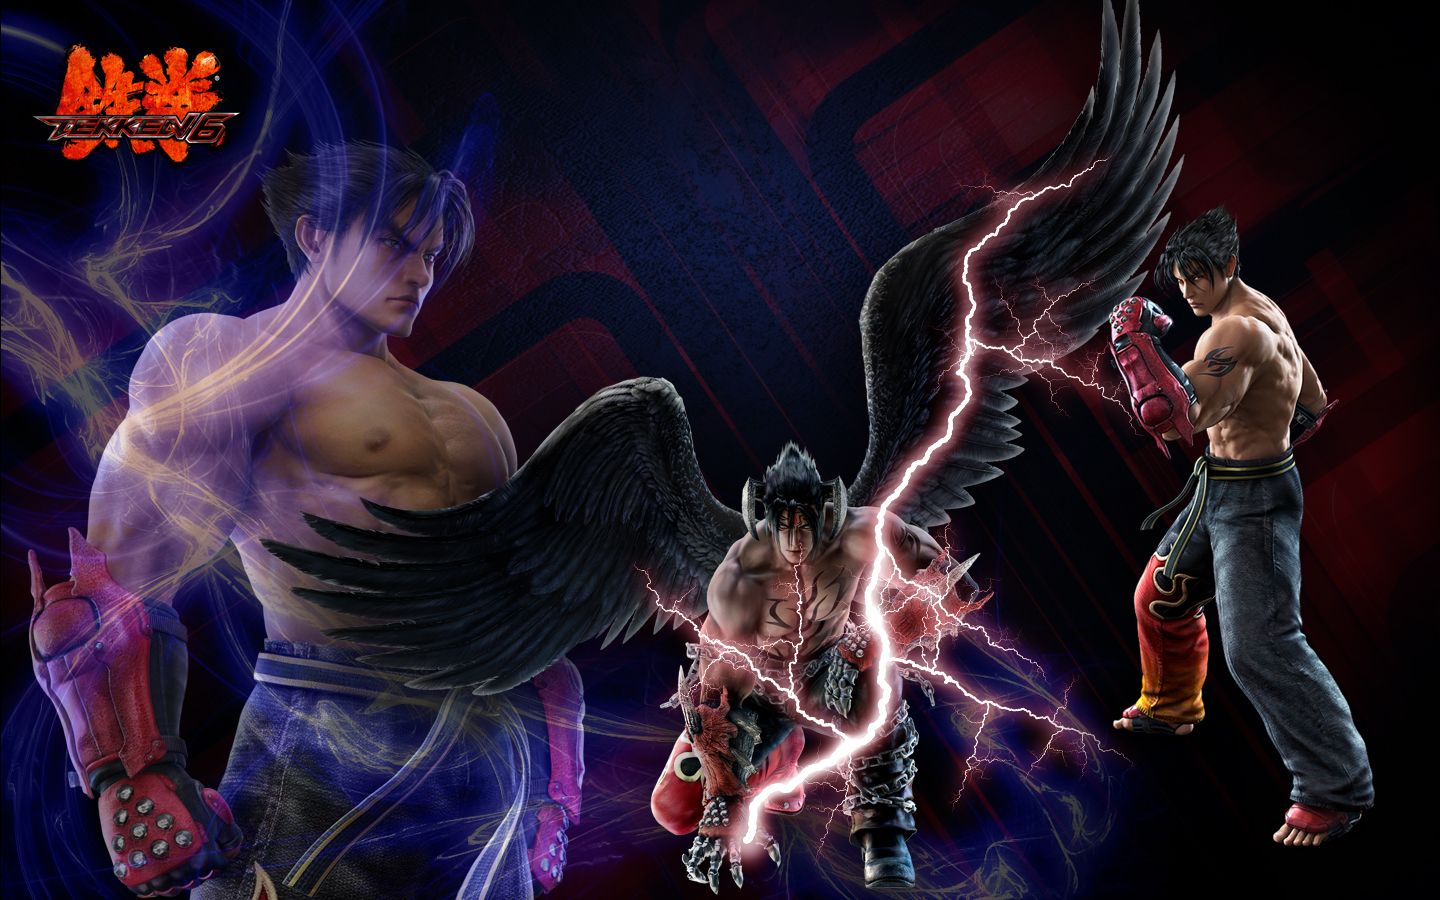 Jin Tekken 6 Wallpaper by pvlimota on DeviantArt